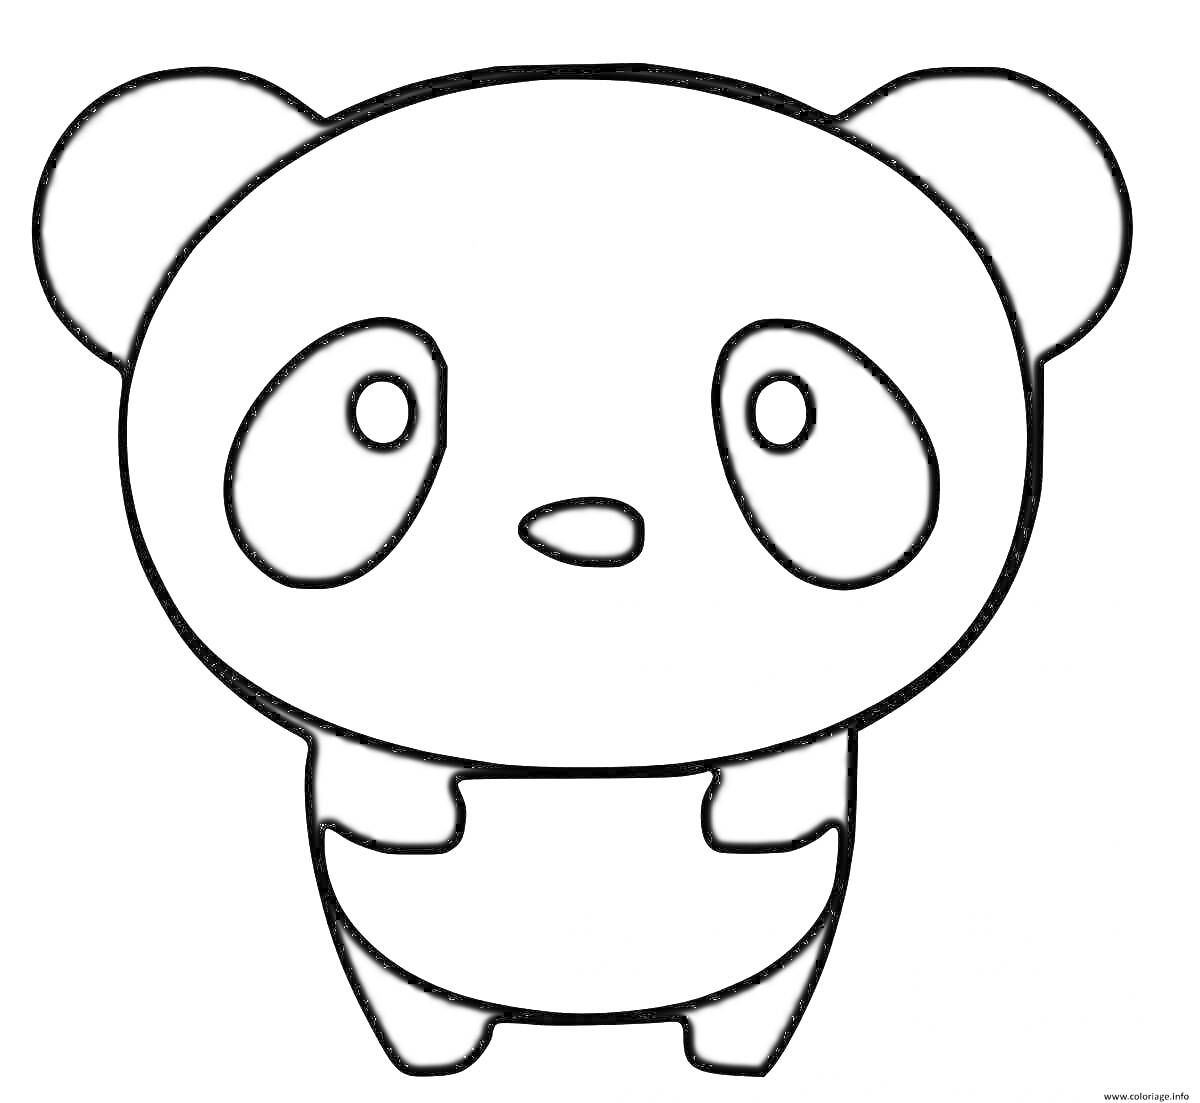 Раскраска Маленькая панда с большими глазами и ушами, стоящая на задних лапках